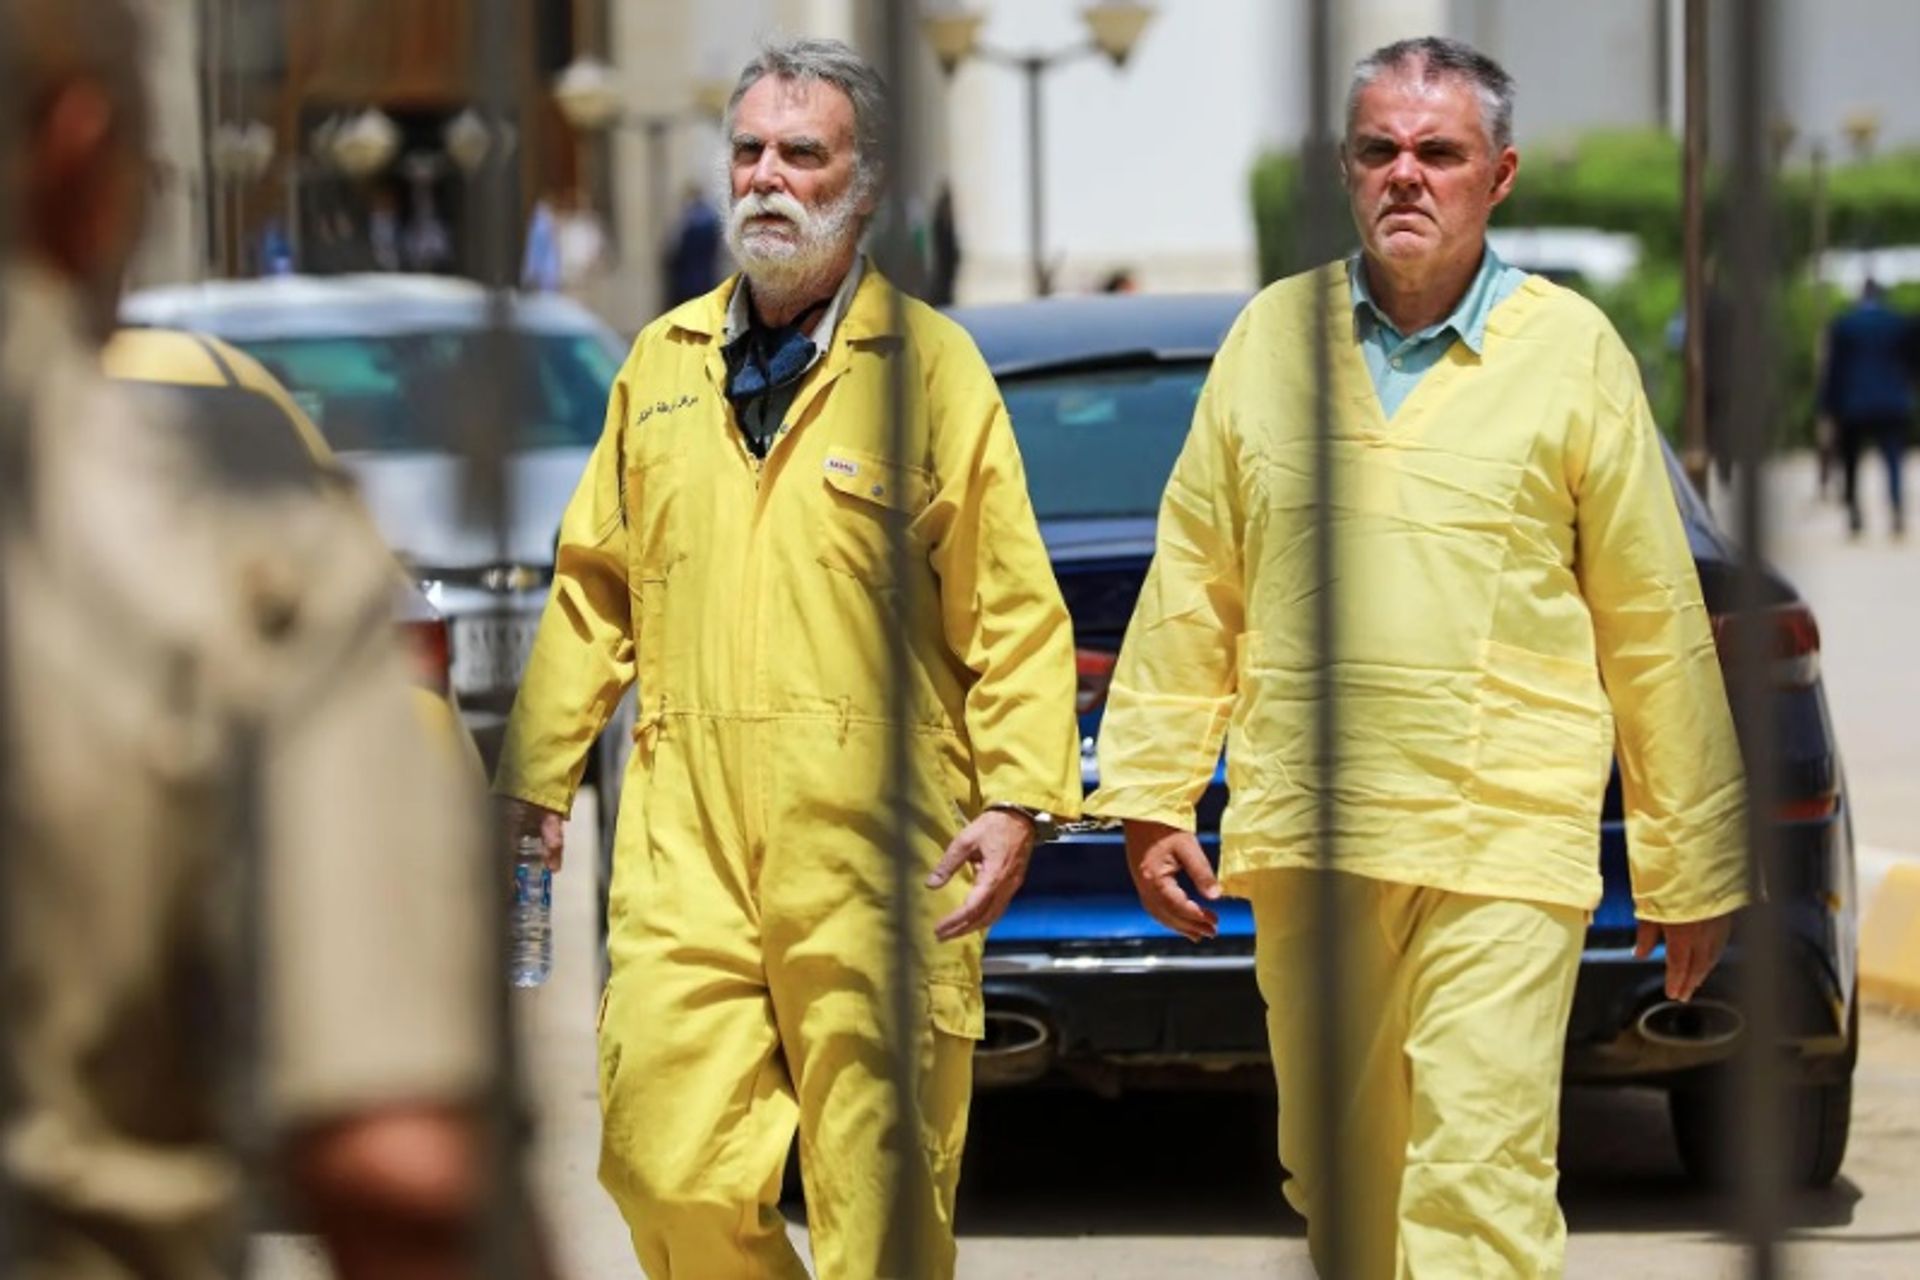 ג'יימס פיטון (משמאל) ווולקר ולדמן (מימין) עוזבים את בית המשפט הפדרלי לערעורים בבגדד לאחר שנכחו בדיון בערעור בחודש מאי.

עמיר אל-מוחמדאווי/dpa/Alamy Live News